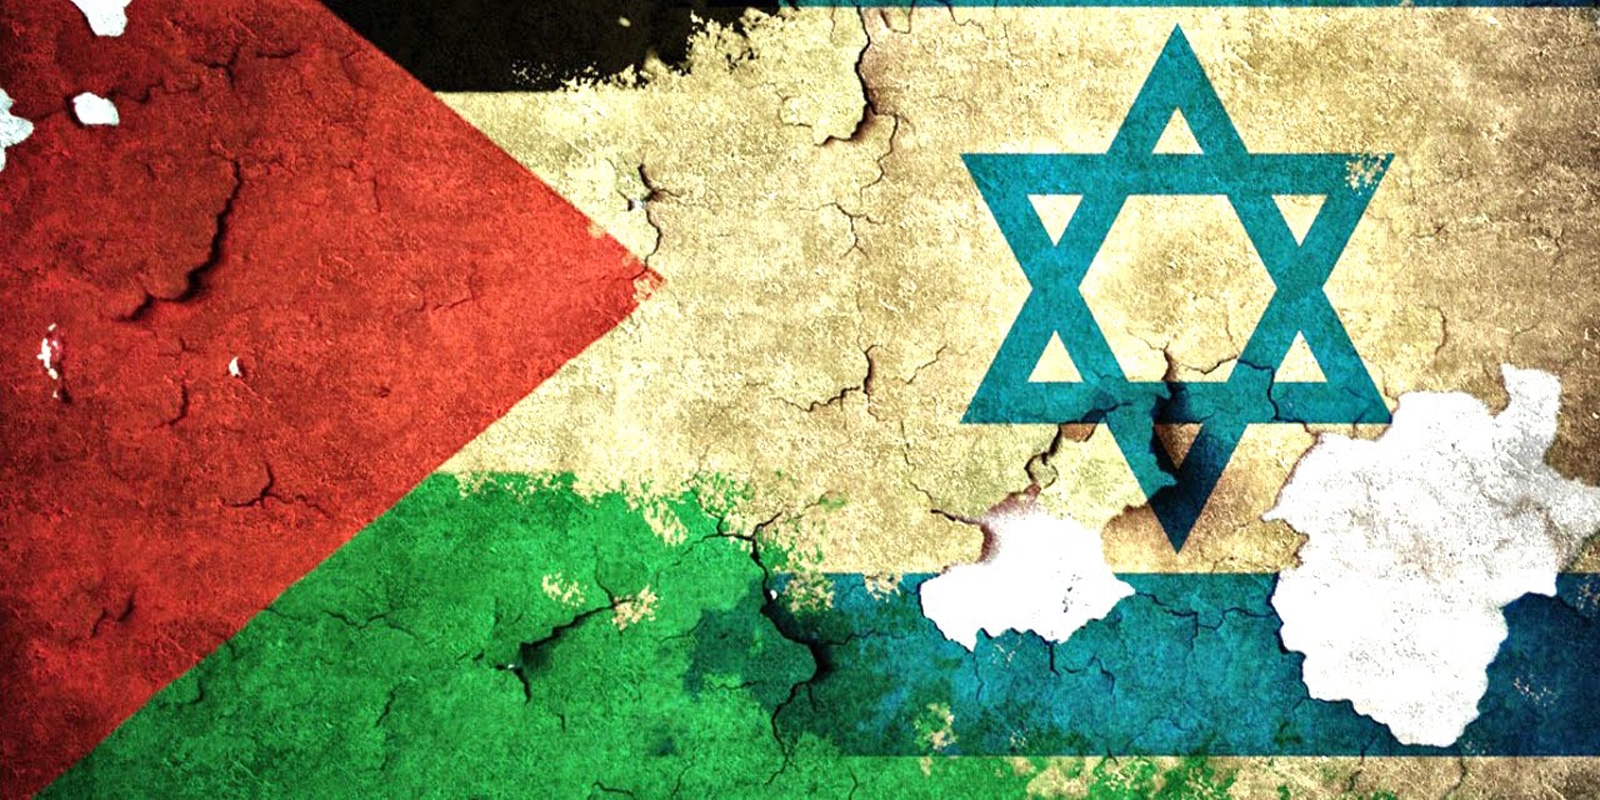 Η παλαιστινική αρχή καλεί το Ισραήλ για συνομιλίες